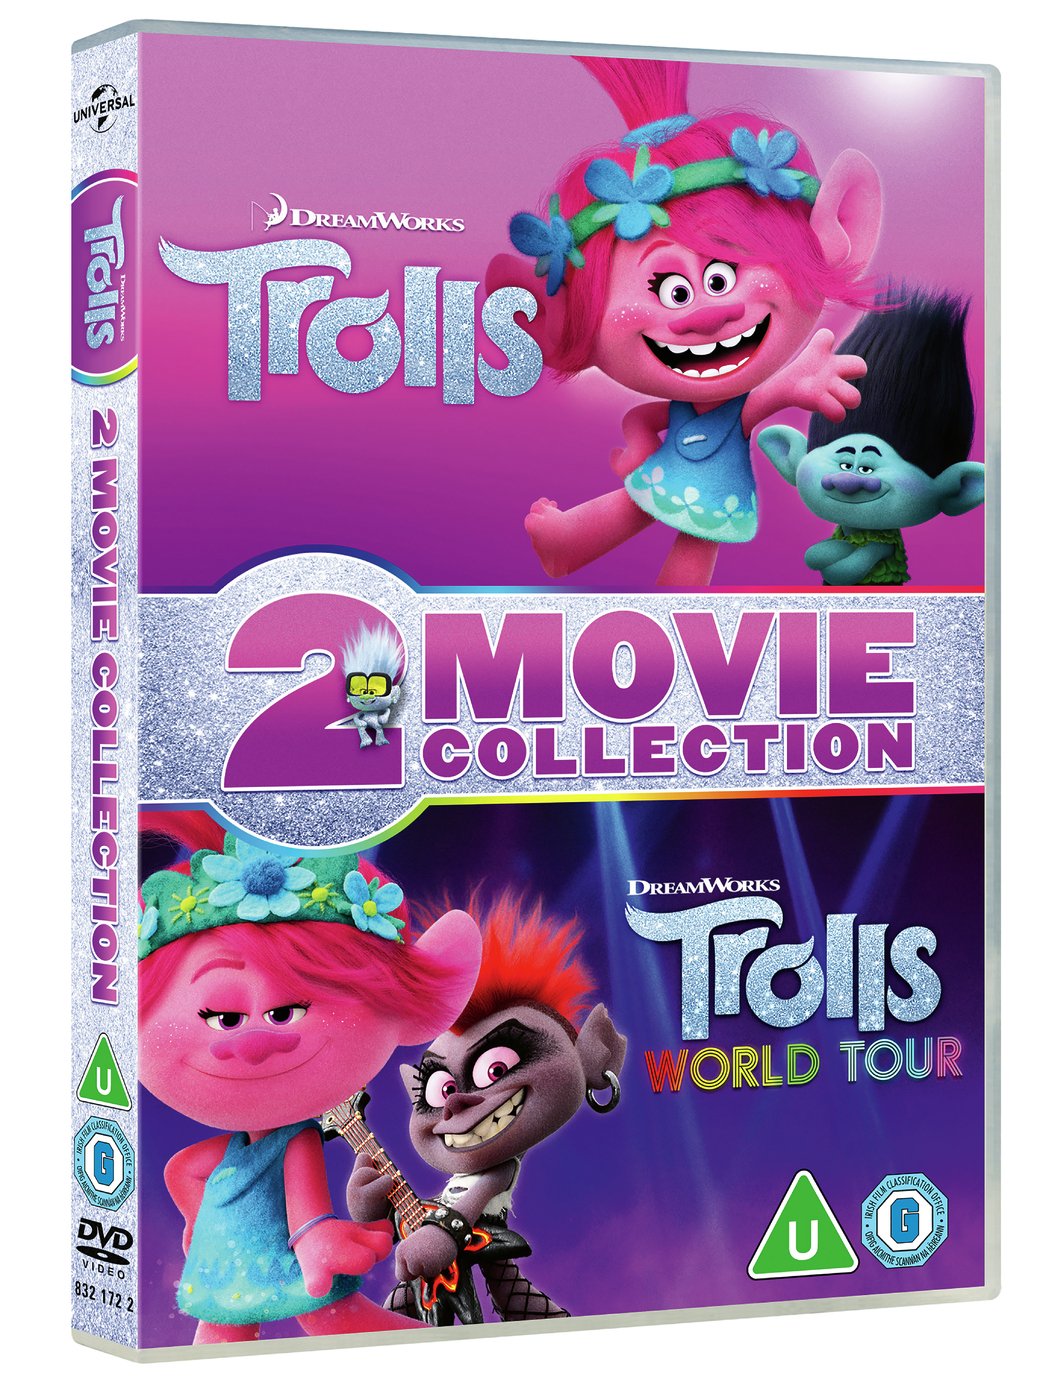 Dreamworks' Trolls & Trolls World Tour DVD Box Set Reviews - Updated ...